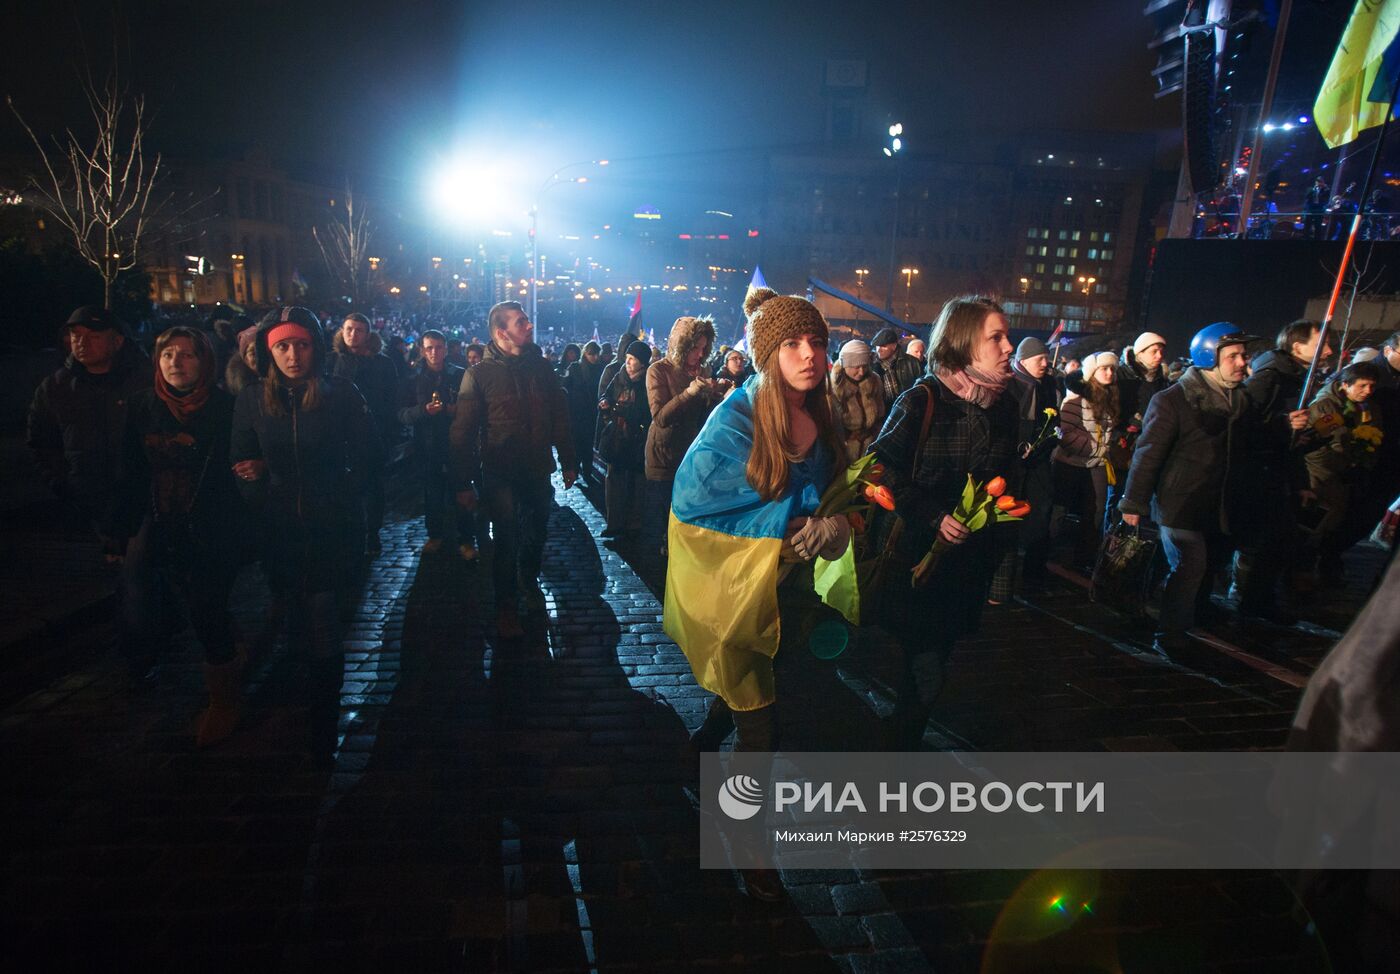 Годовщина событий на киевском Майдане